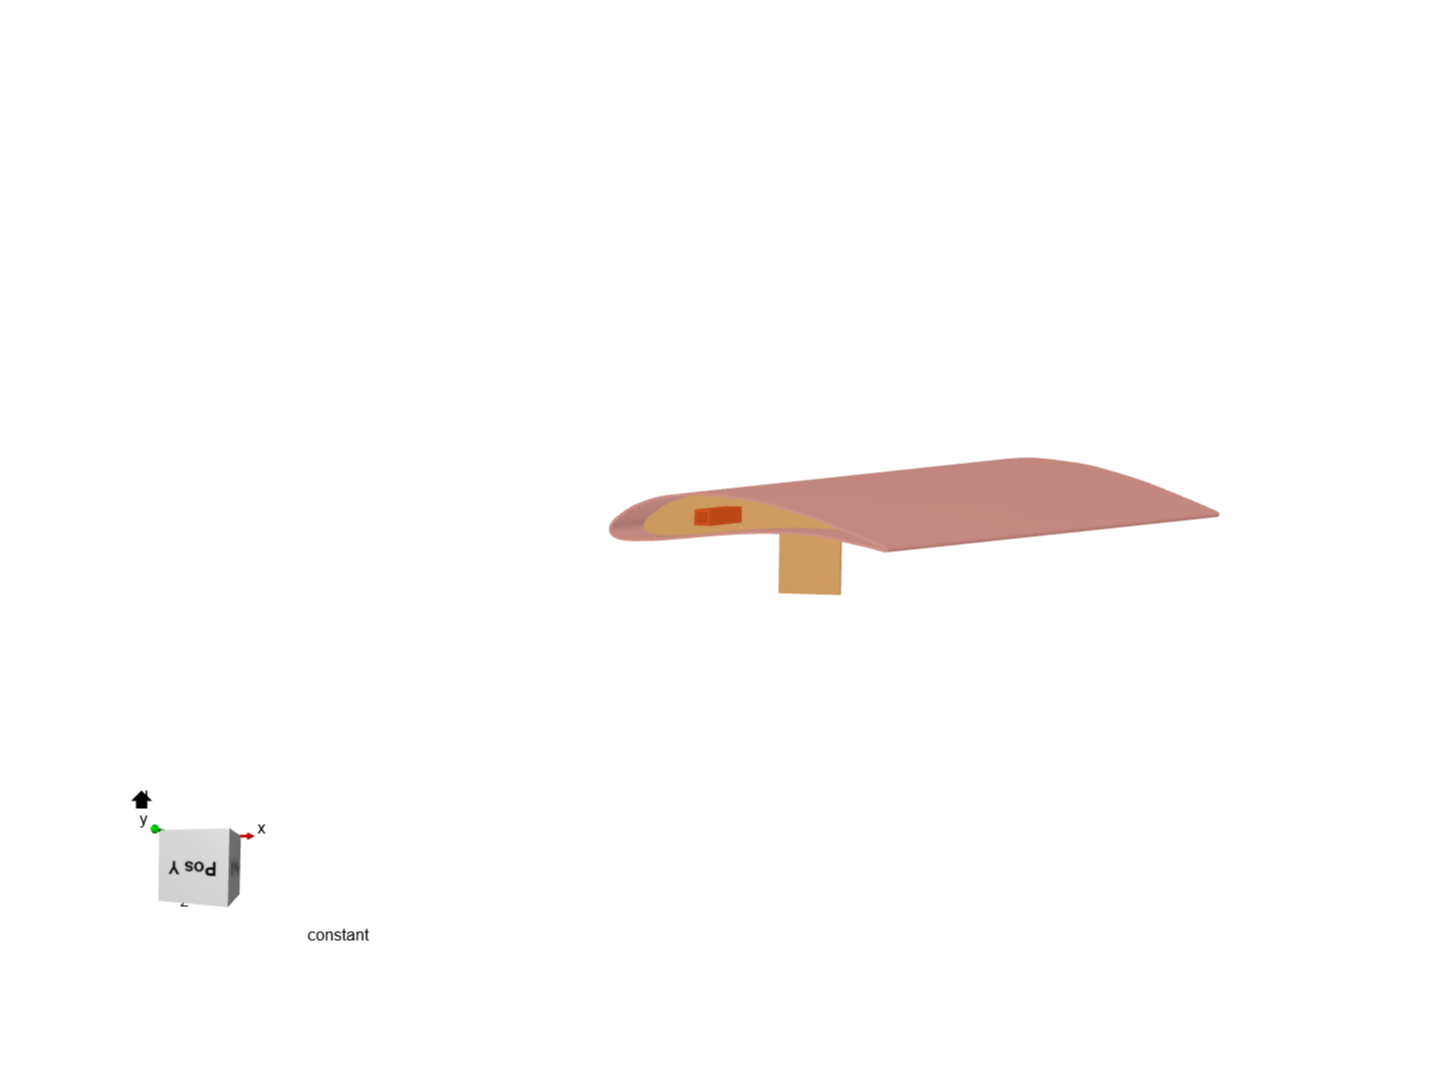 Fixed Wing VTOL UAV image